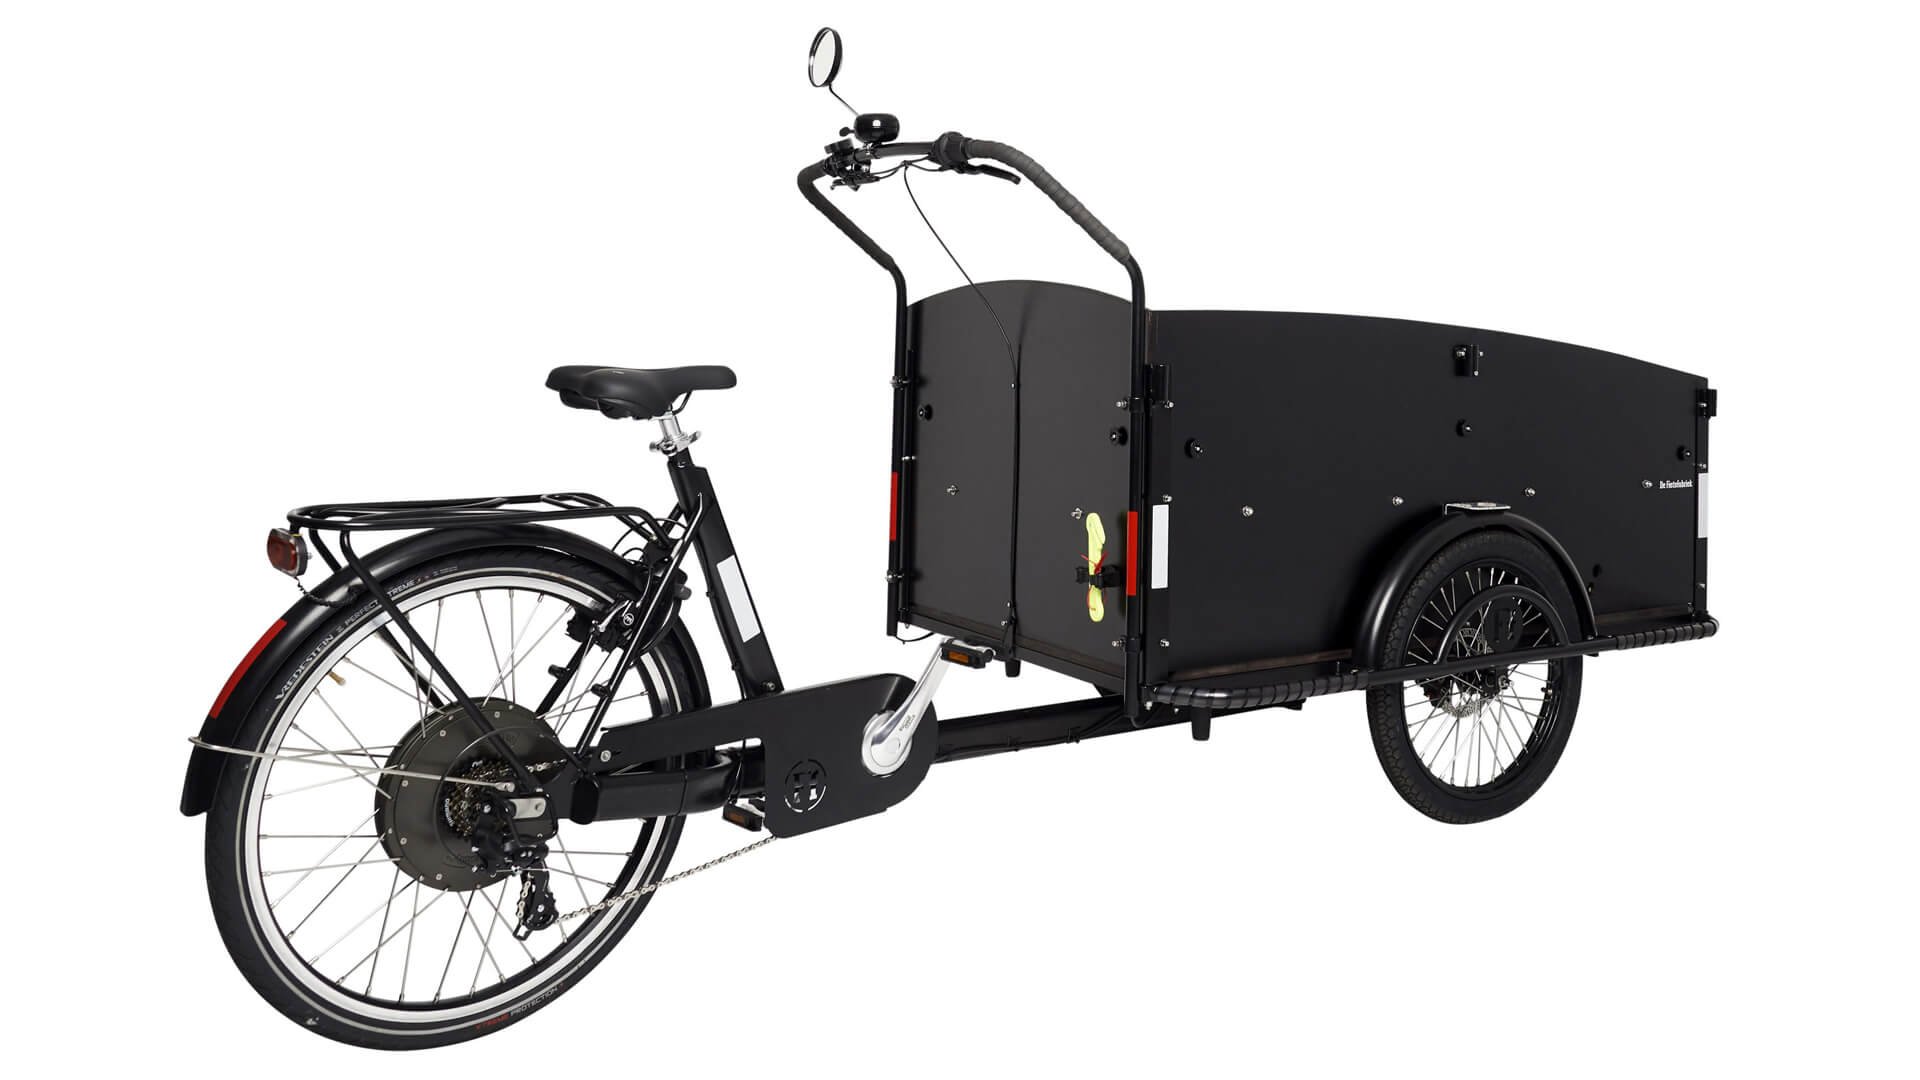 Le vélobus avec assistance électrique pour les crèches et les